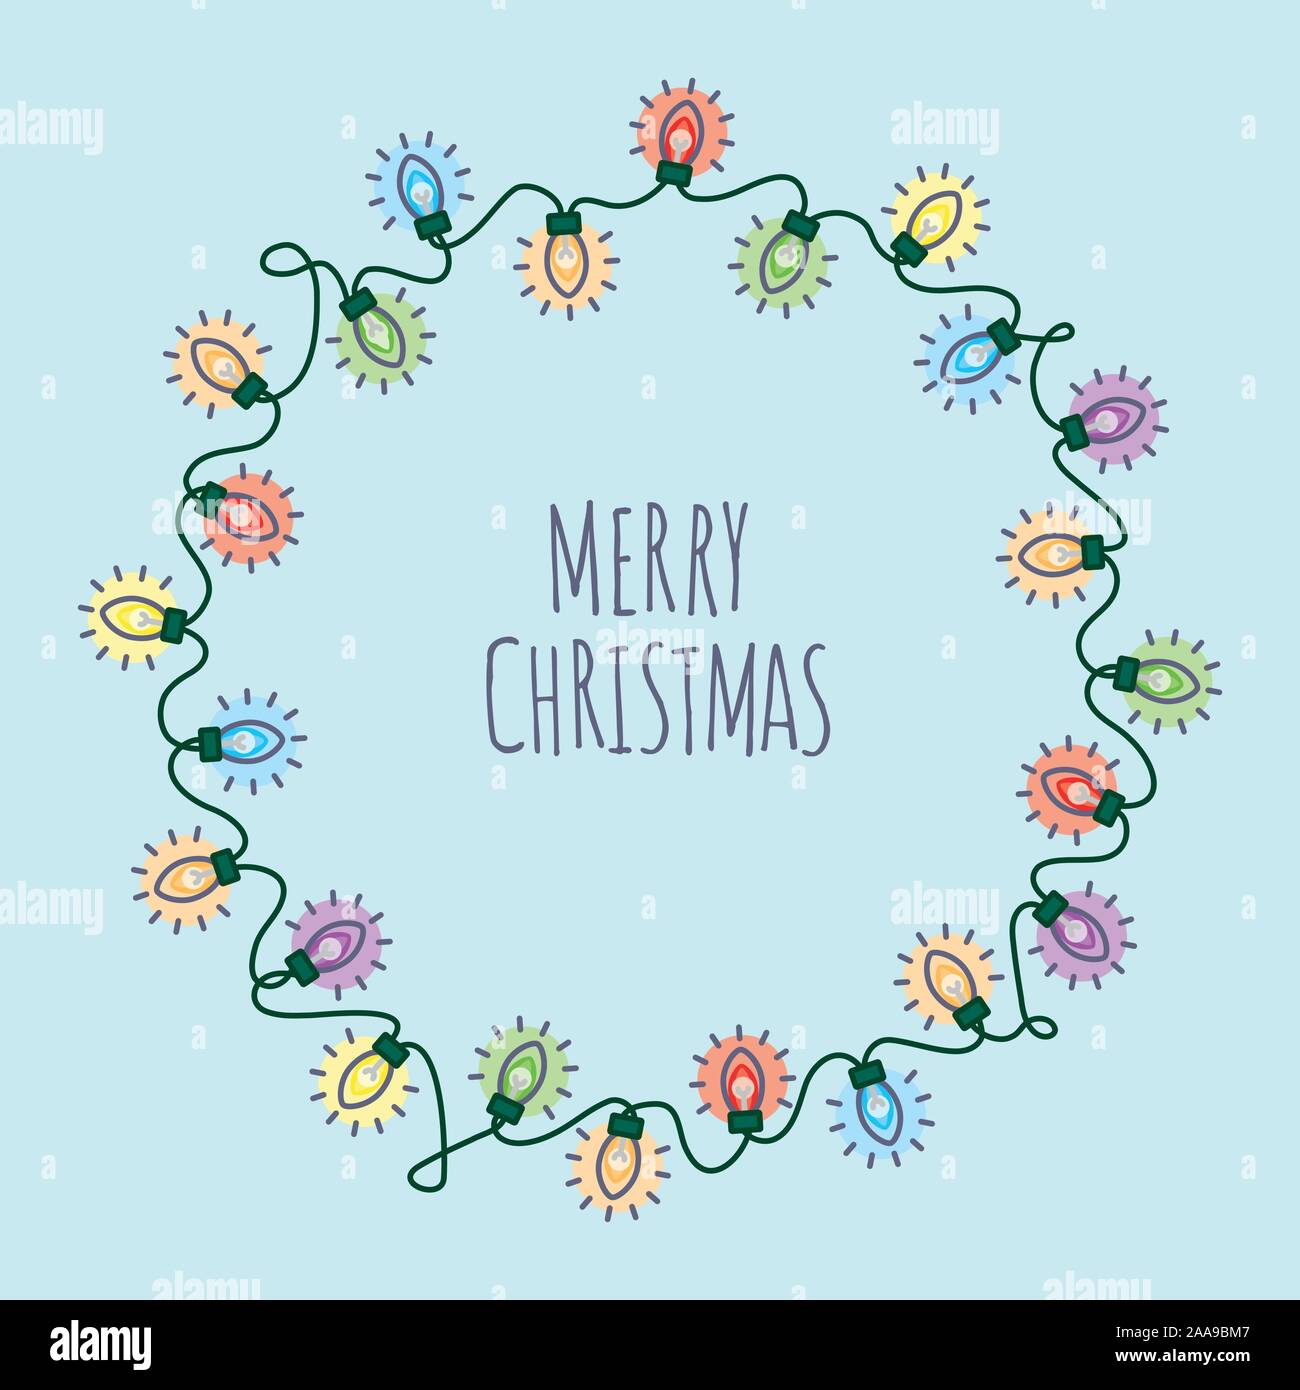 Feliz navidad plaza redonda ilustración vectorial con luces de Navidad guirnalda alrededor del texto sobre fondo azul claro Ilustración del Vector